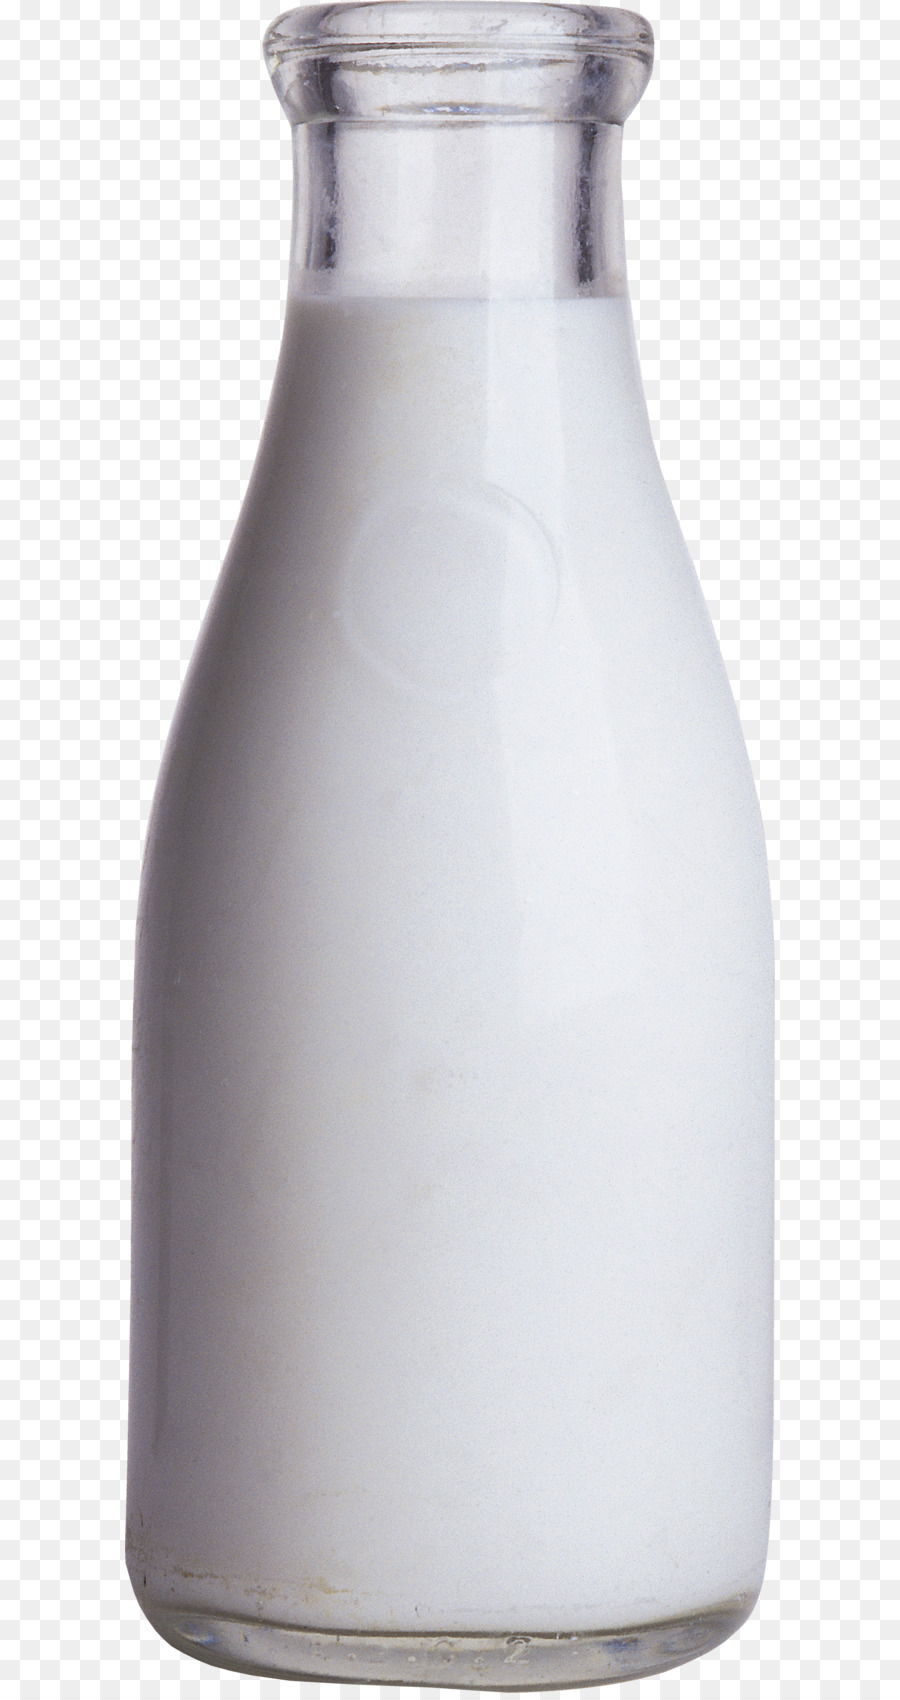 Milk bottle Square milk jug - milk glass bottle PNG png download - 1379*3592 - Free Transparent Milk png Download.